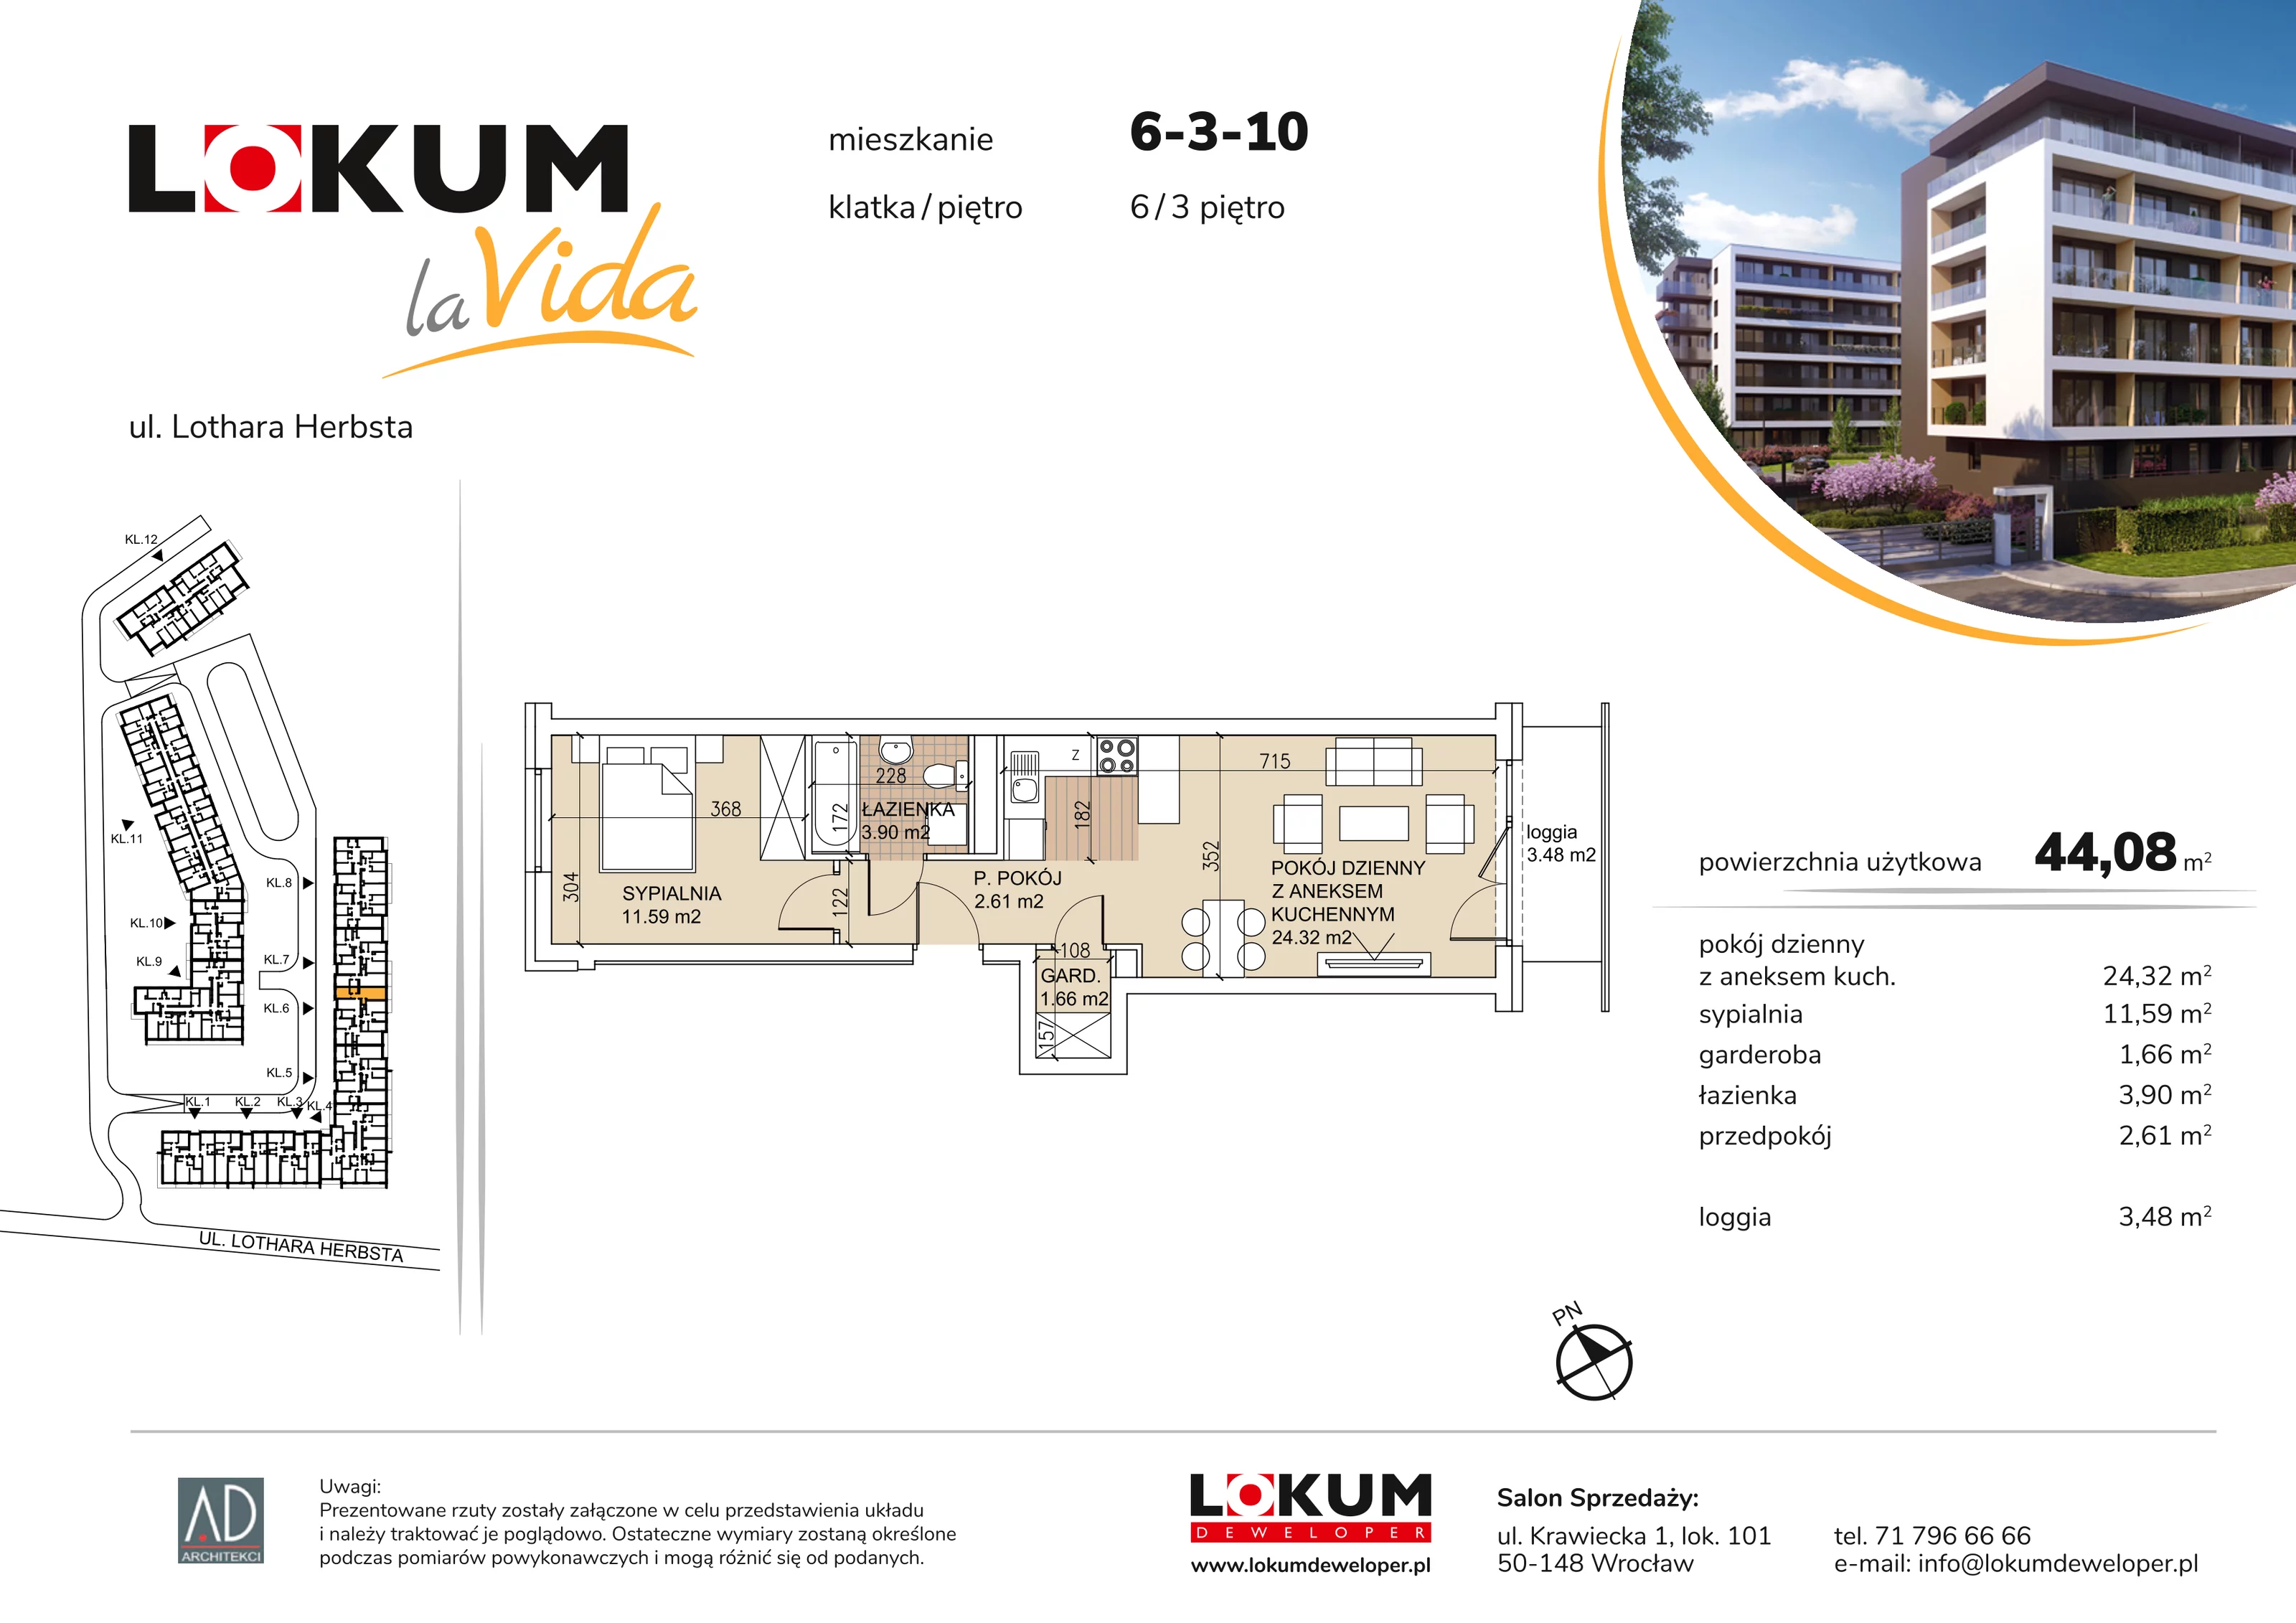 Mieszkanie 44,08 m², piętro 3, oferta nr 6-3-10, Lokum la Vida, Wrocław, Sołtysowice, ul. Lothara Herbsta